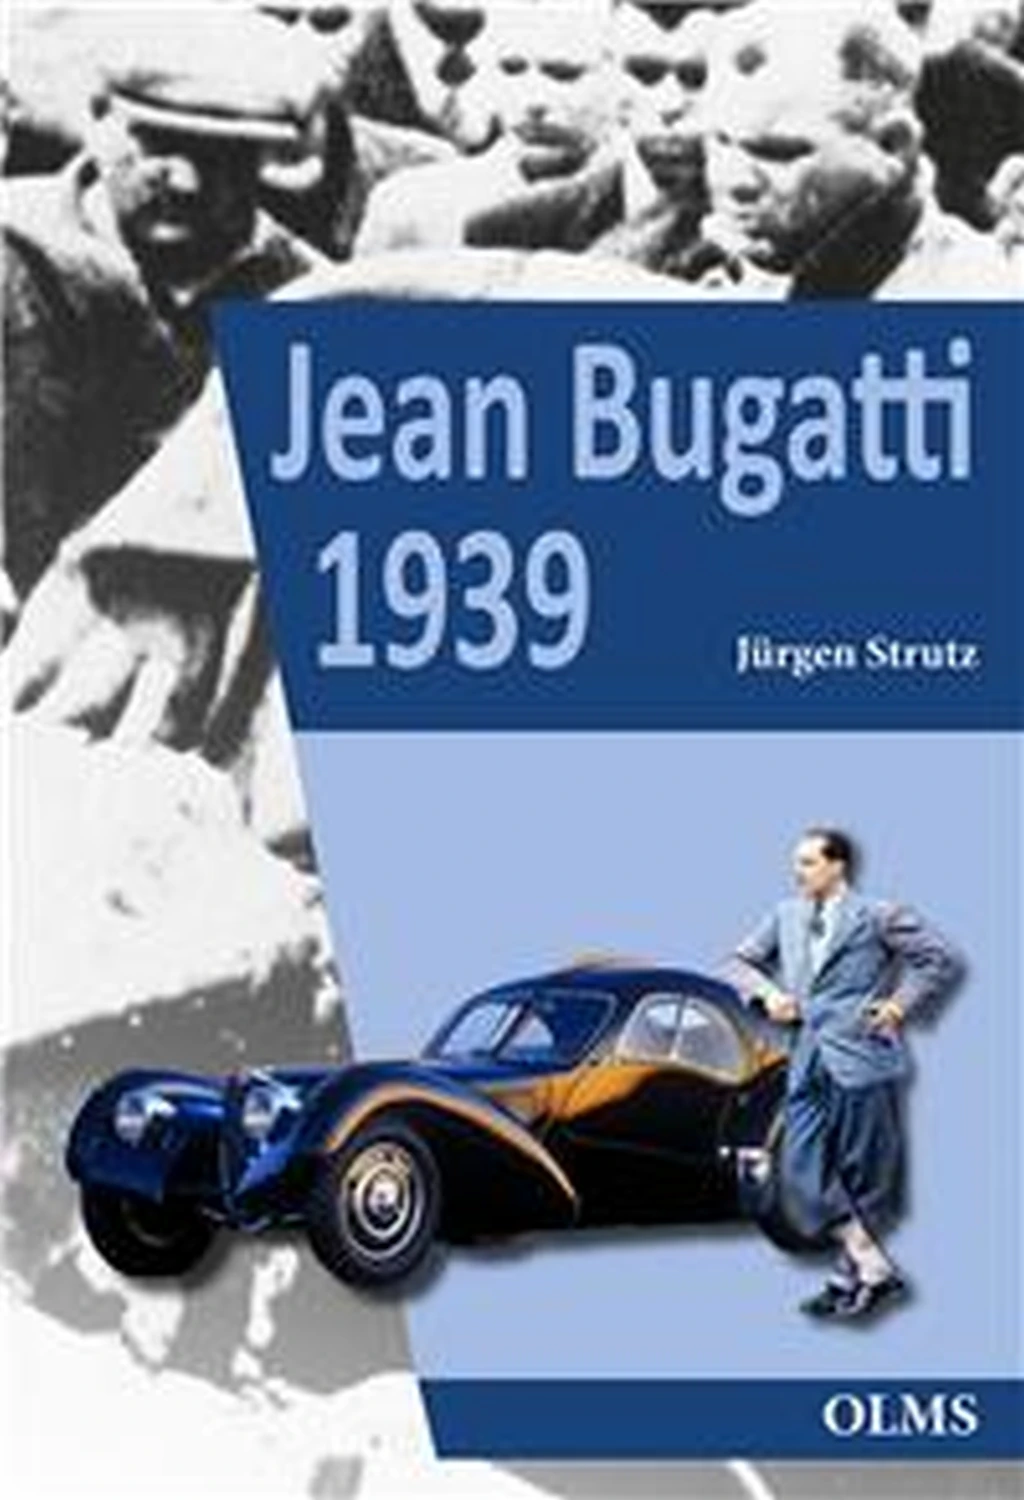 Jean Bugatti 1939 von Geoarg Olms AG 